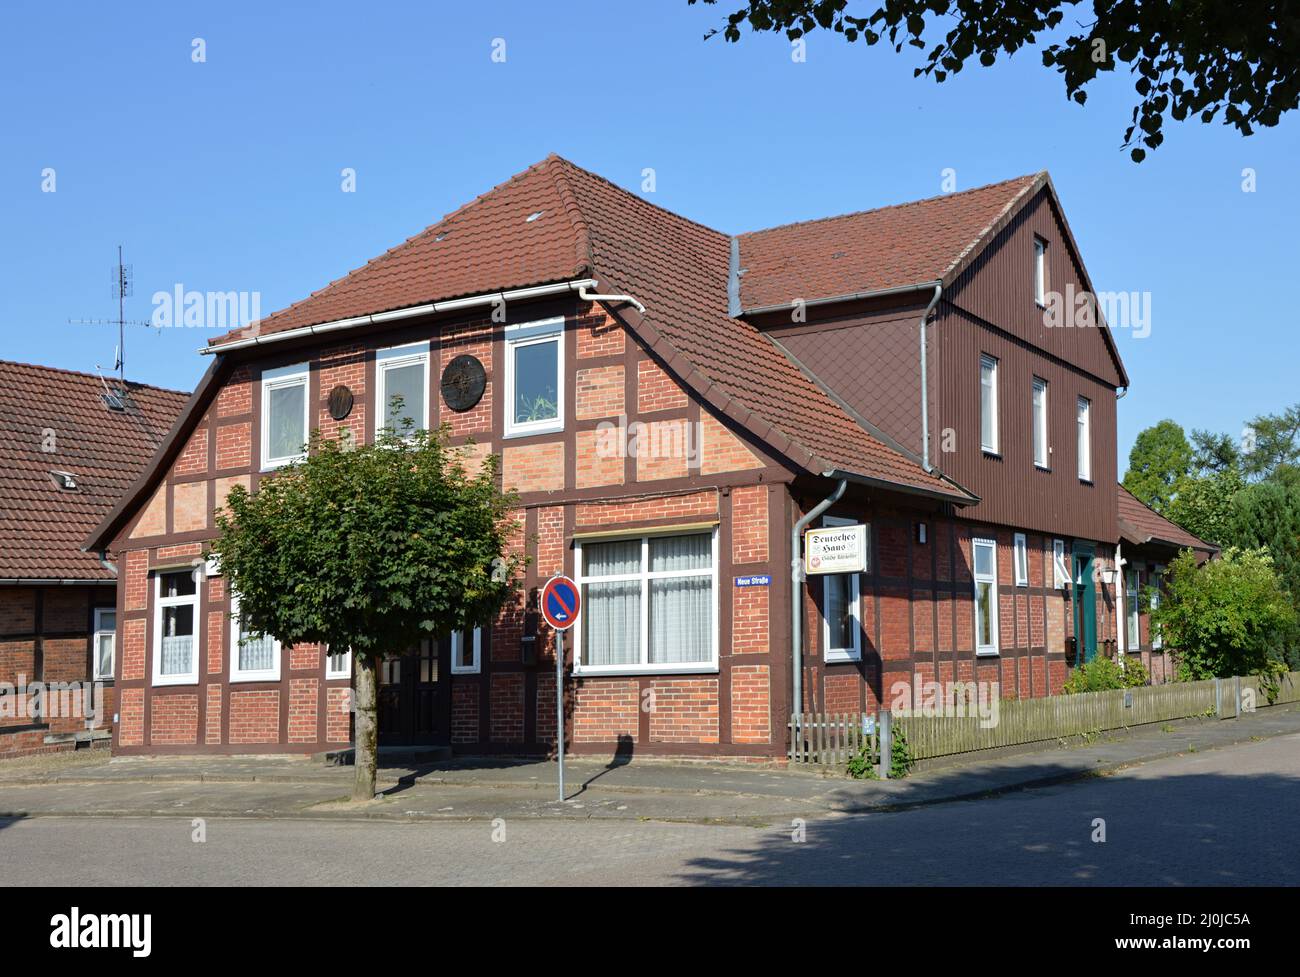 Typische norddeutsche Architektur im Dorf Ahlden, Niedersachsen Stockfoto